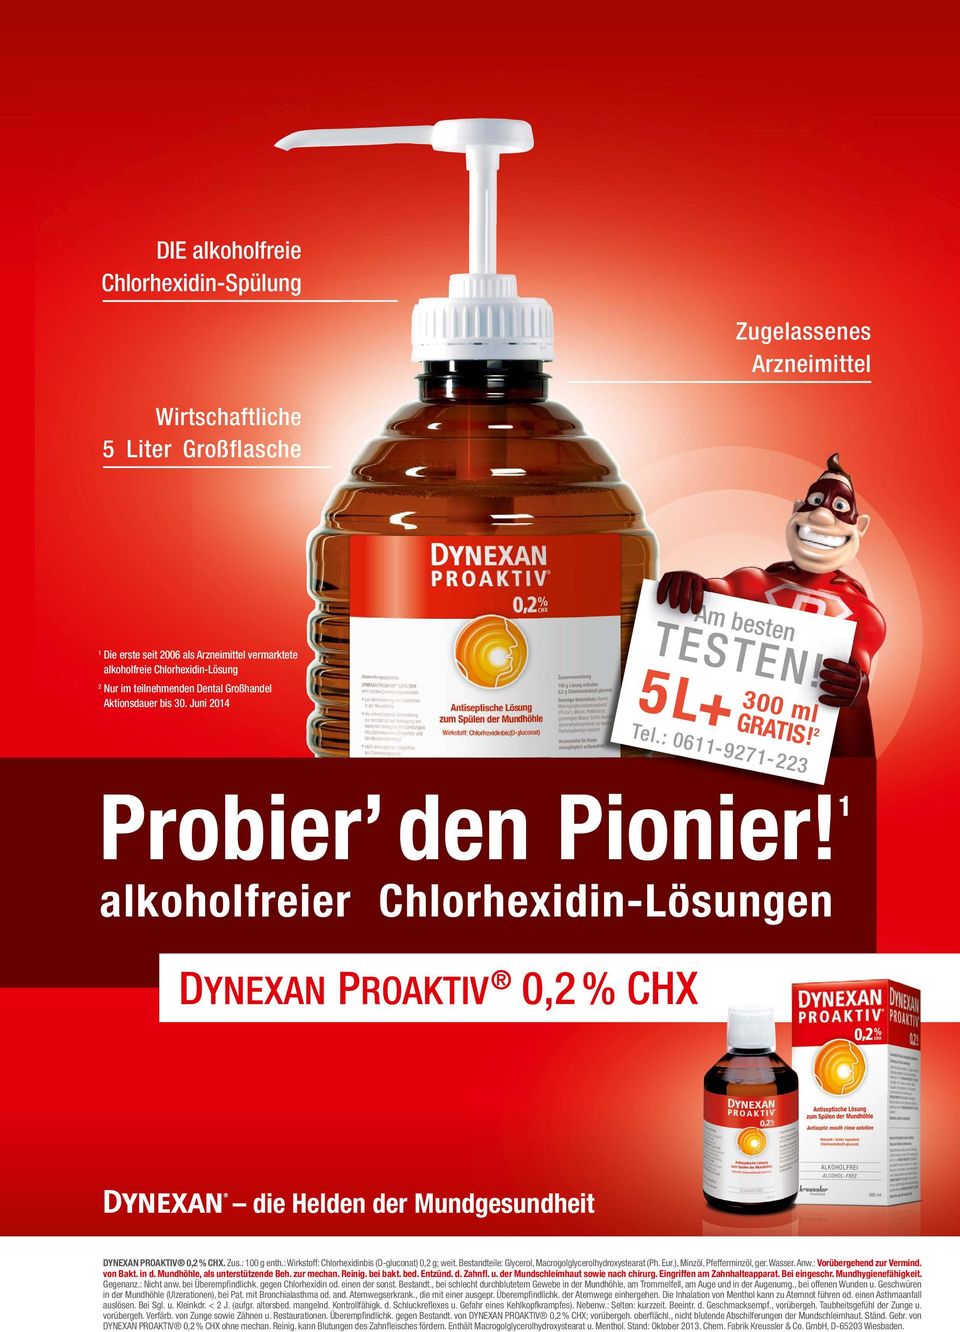 1 alkoholfreier Chlorhexidin-Lösungen 0,2 % CHX die Helden der Mundgesundheit DYNEXAN PROAKTIV 0,2 % CHX. Zus.: 100 g enth.: Wirkstoff: Chlorhexidinbis (D-gluconat) 0,2 g; weit.